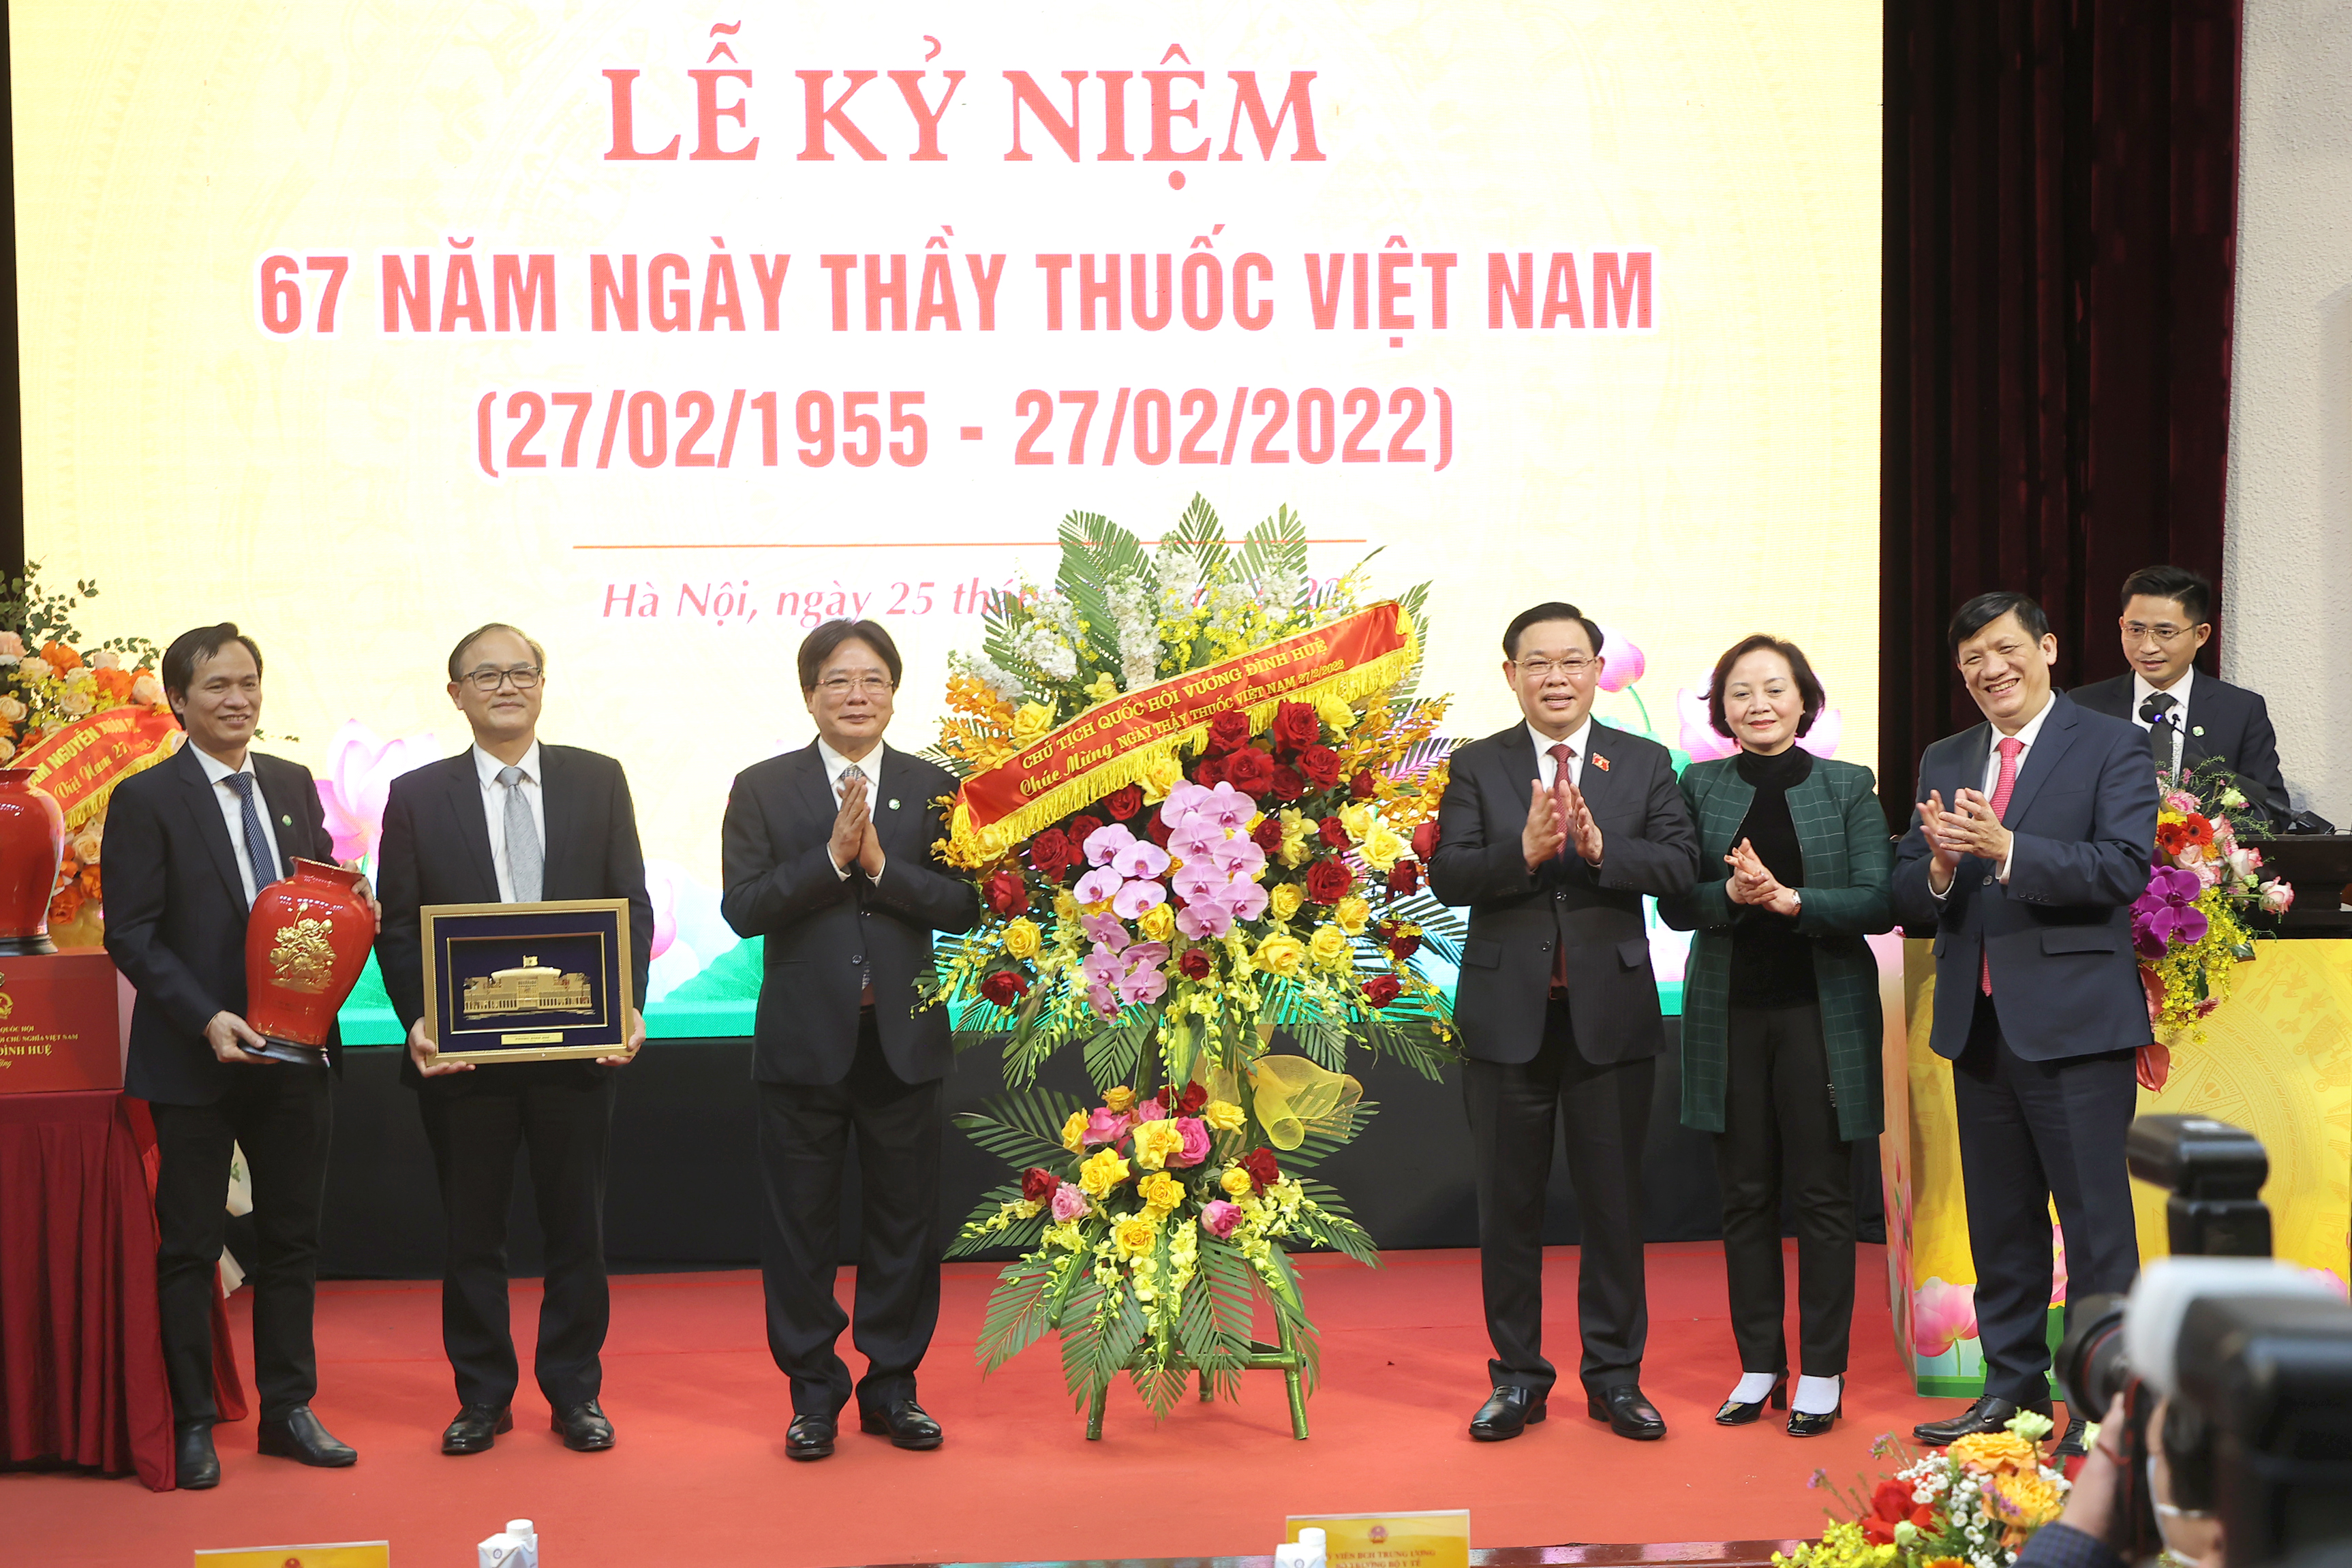 Kỷ niệm ngày Thầy thuốc Việt Nam đã được tổ chức trong bao nhiêu năm?
